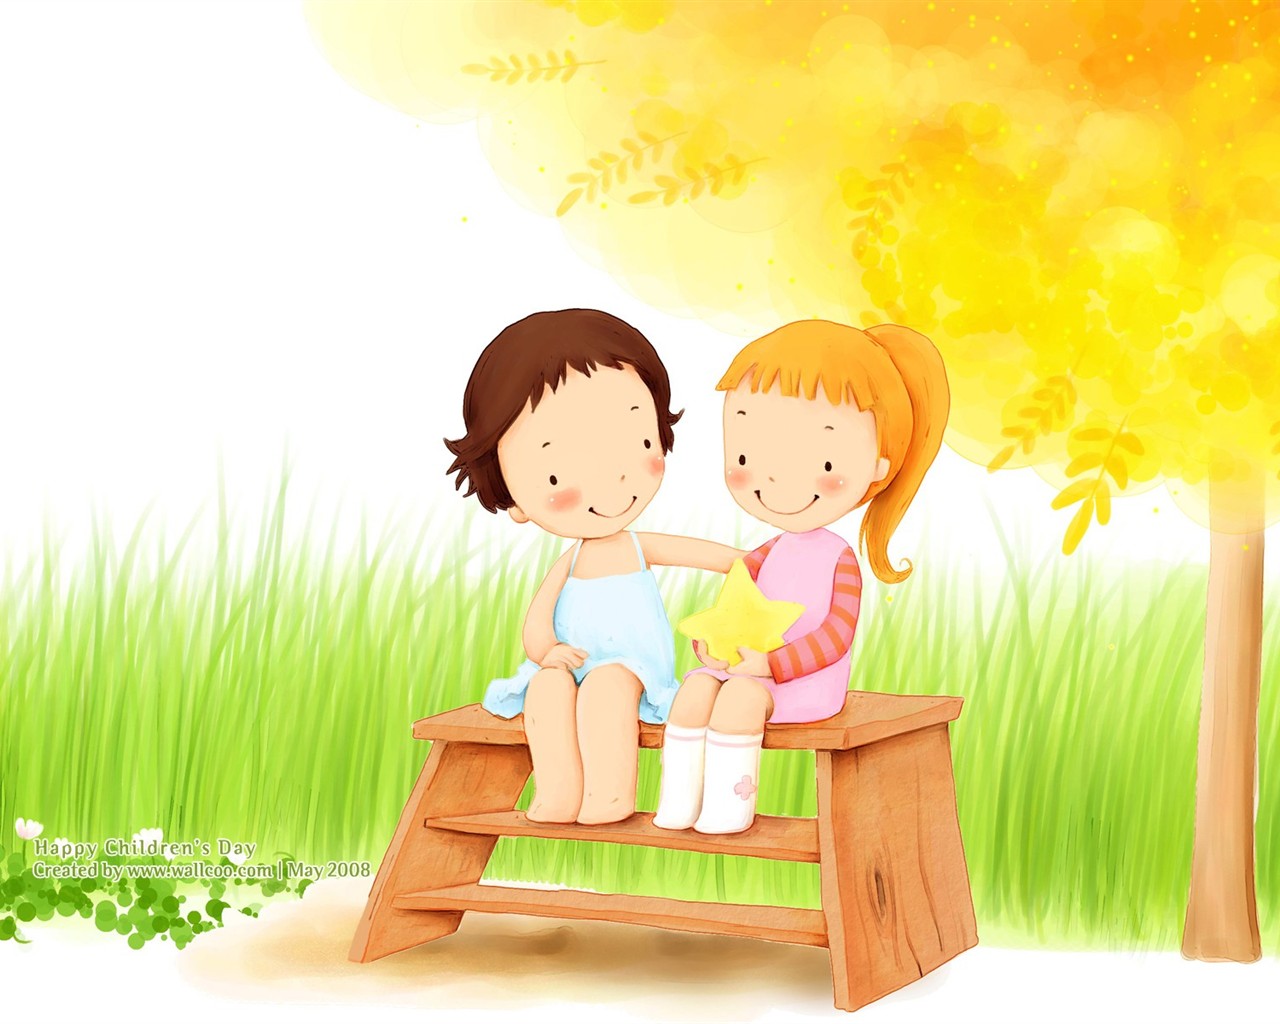 Lovely Children's Day wallpaper illustrator #16 - 1280x1024